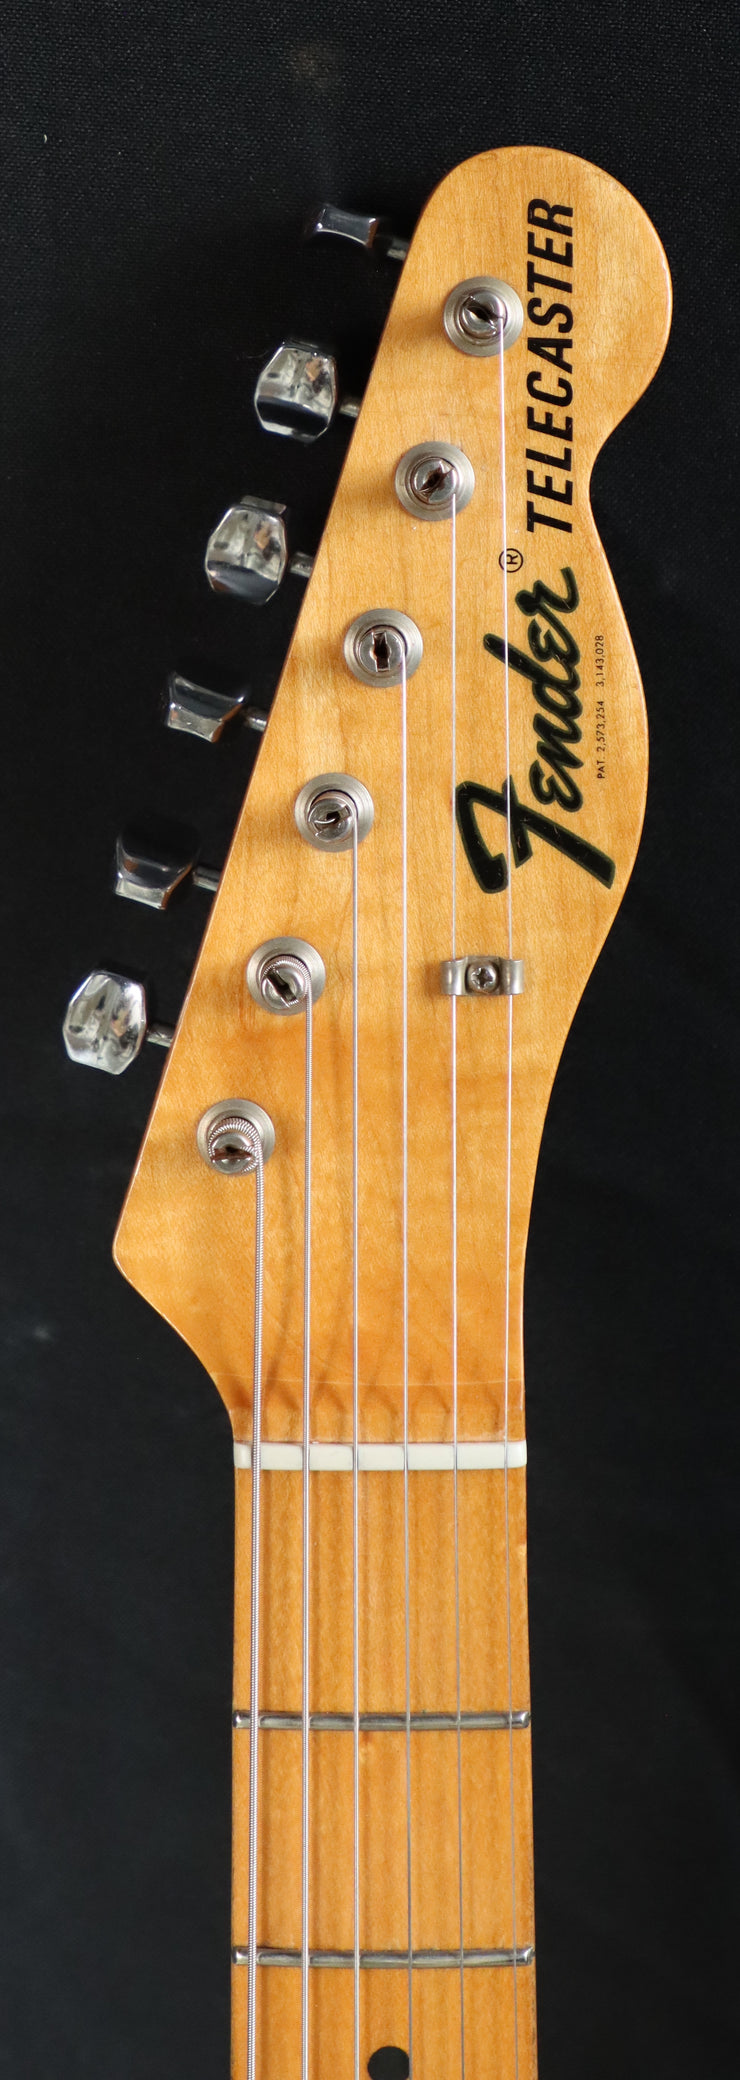 1967 Fender Telecaster